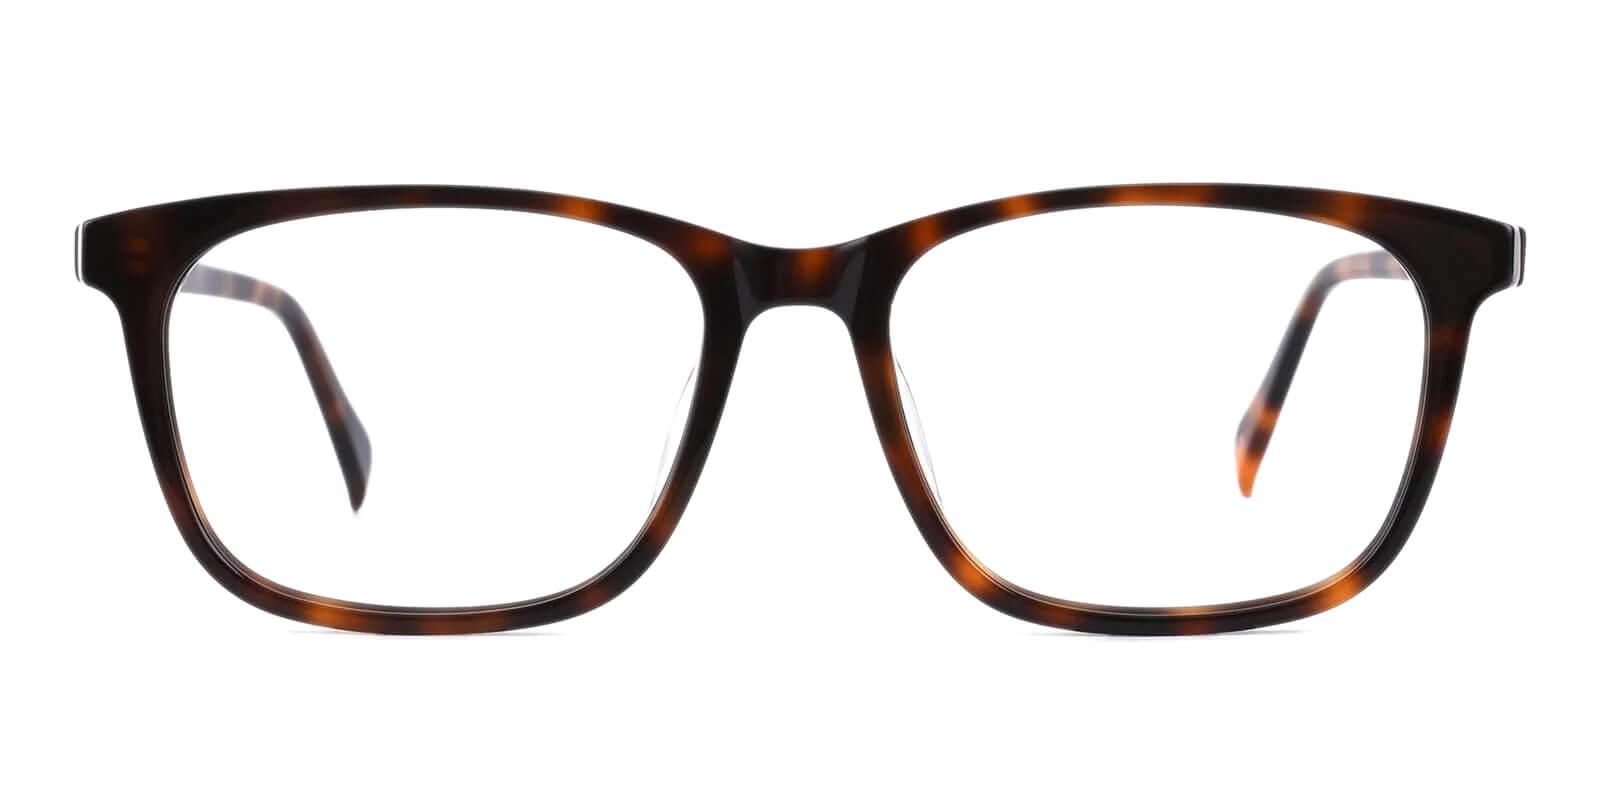 Plaza Tortoise Acetate Eyeglasses , UniversalBridgeFit Frames from ABBE Glasses